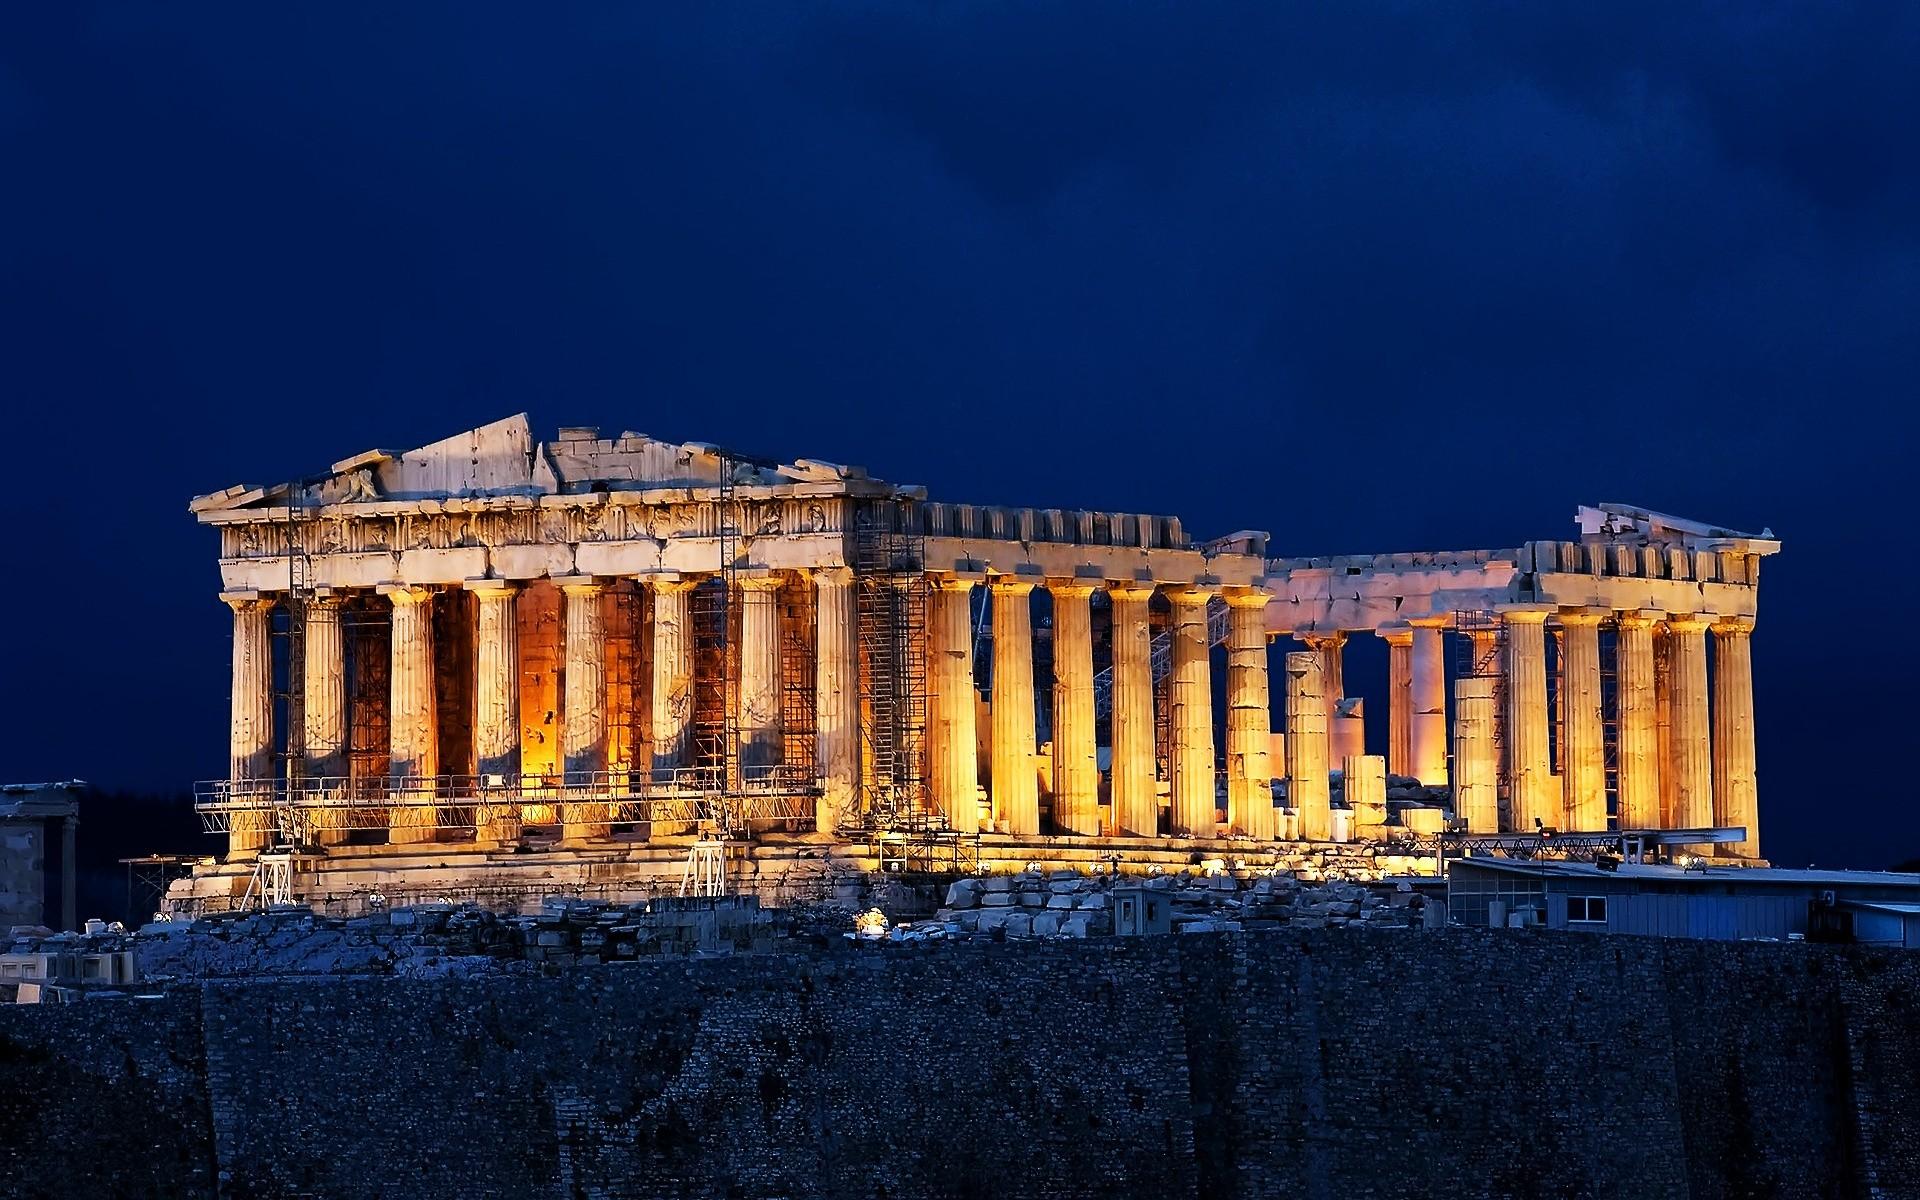 Parthenon Acropolis Athens. Android wallpaper for free